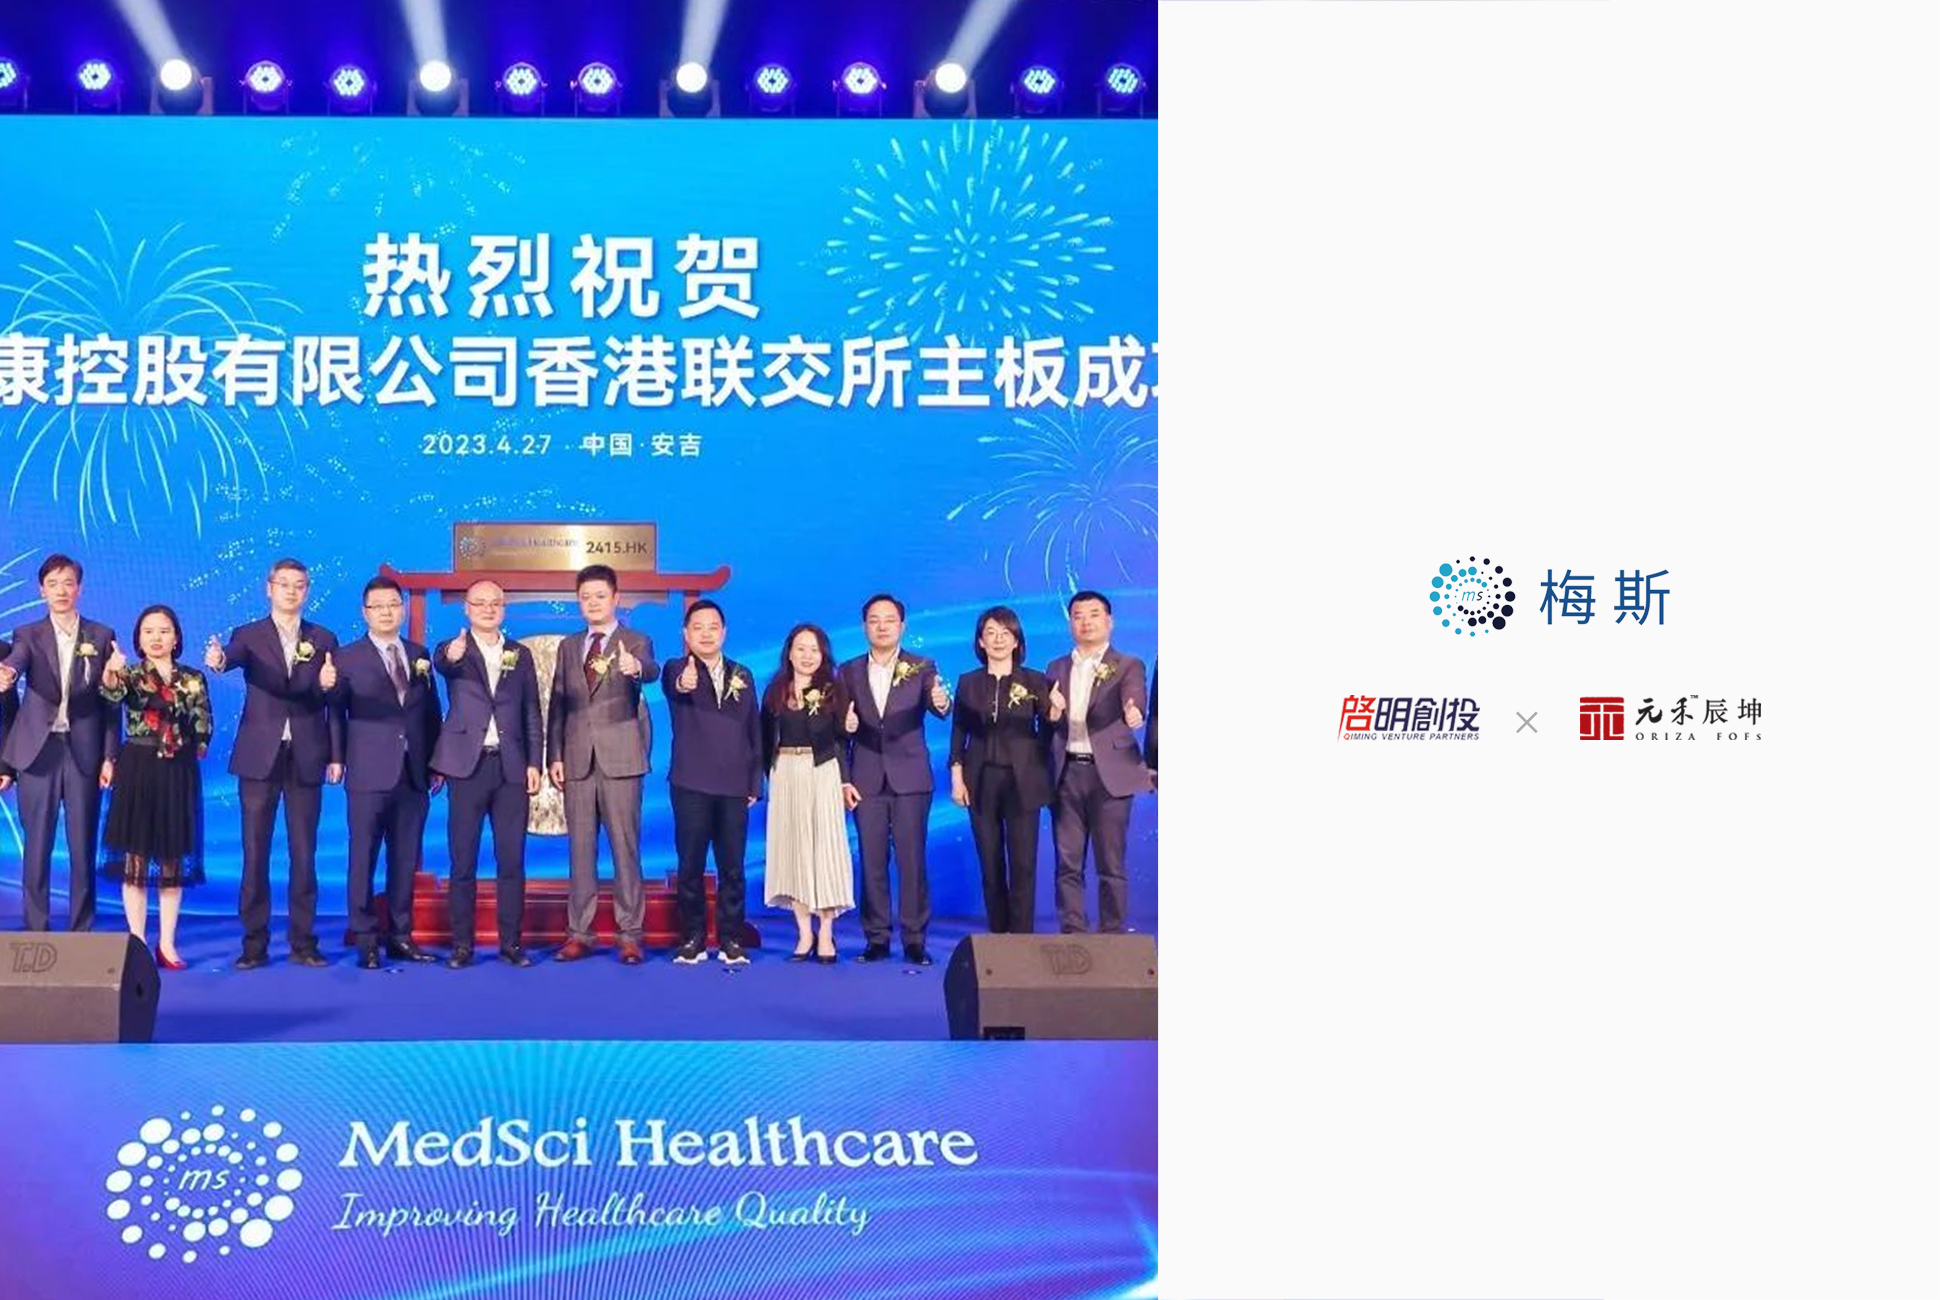 中国最大的在线专业医师平台之一——梅斯健康登陆港交所 | 辰坤Family